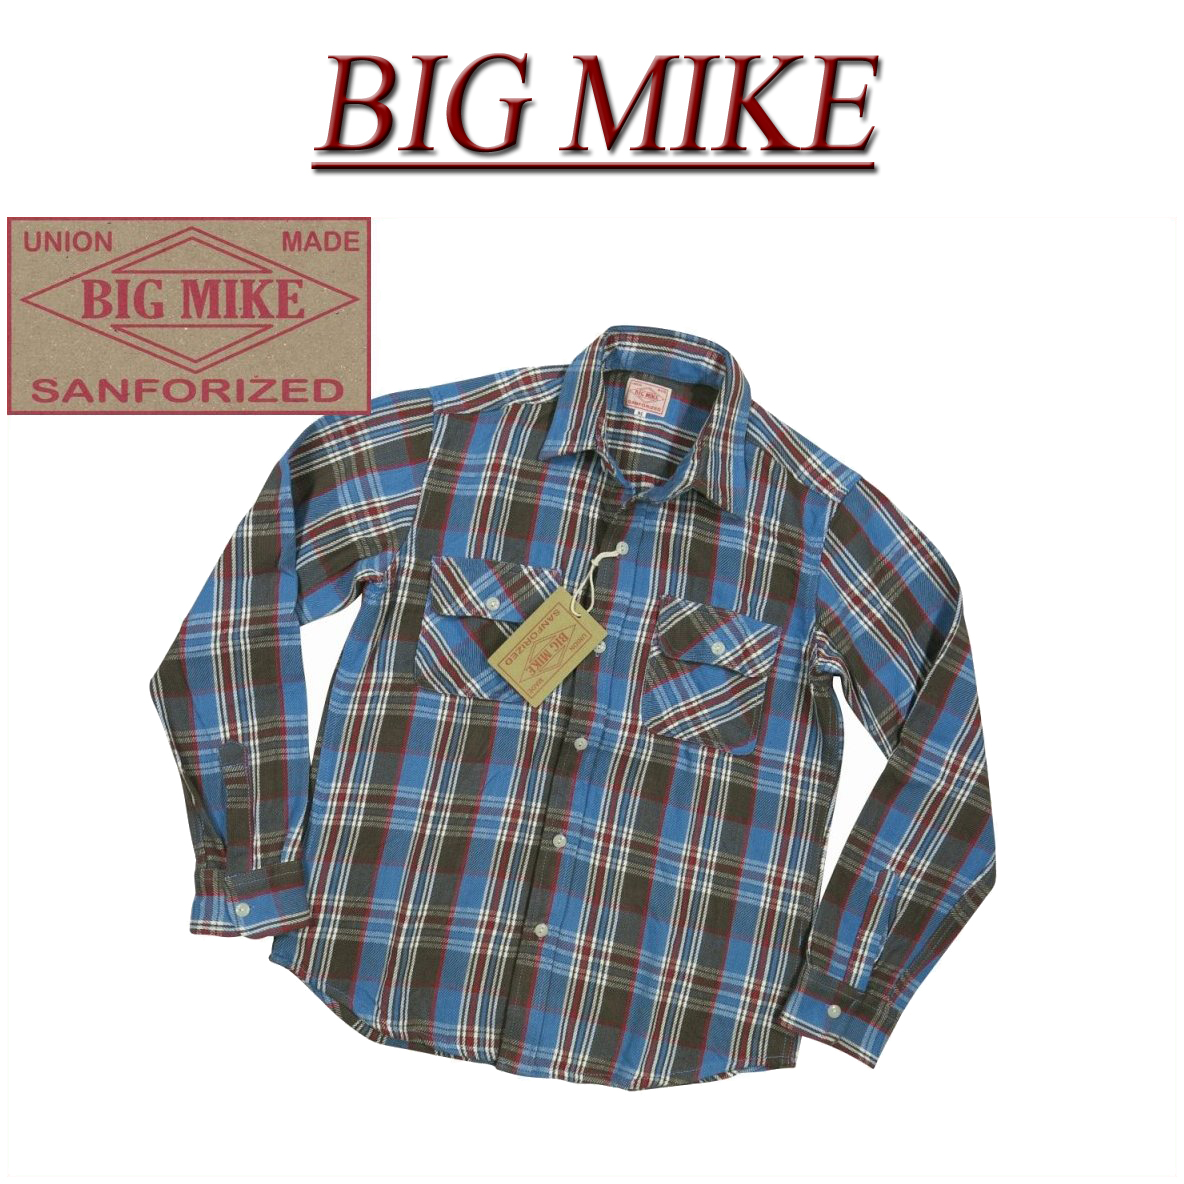 送料無料 7色3サイズ Ac193 新品 Big Mike 復刻 長袖 チェック ヘビーネルシャツ メンズ ビッグマイク Heavy Flannel Work Shirts フランネルシャツ ワークシャツ ヘビネル Bigmike Made In India Smtb Kd